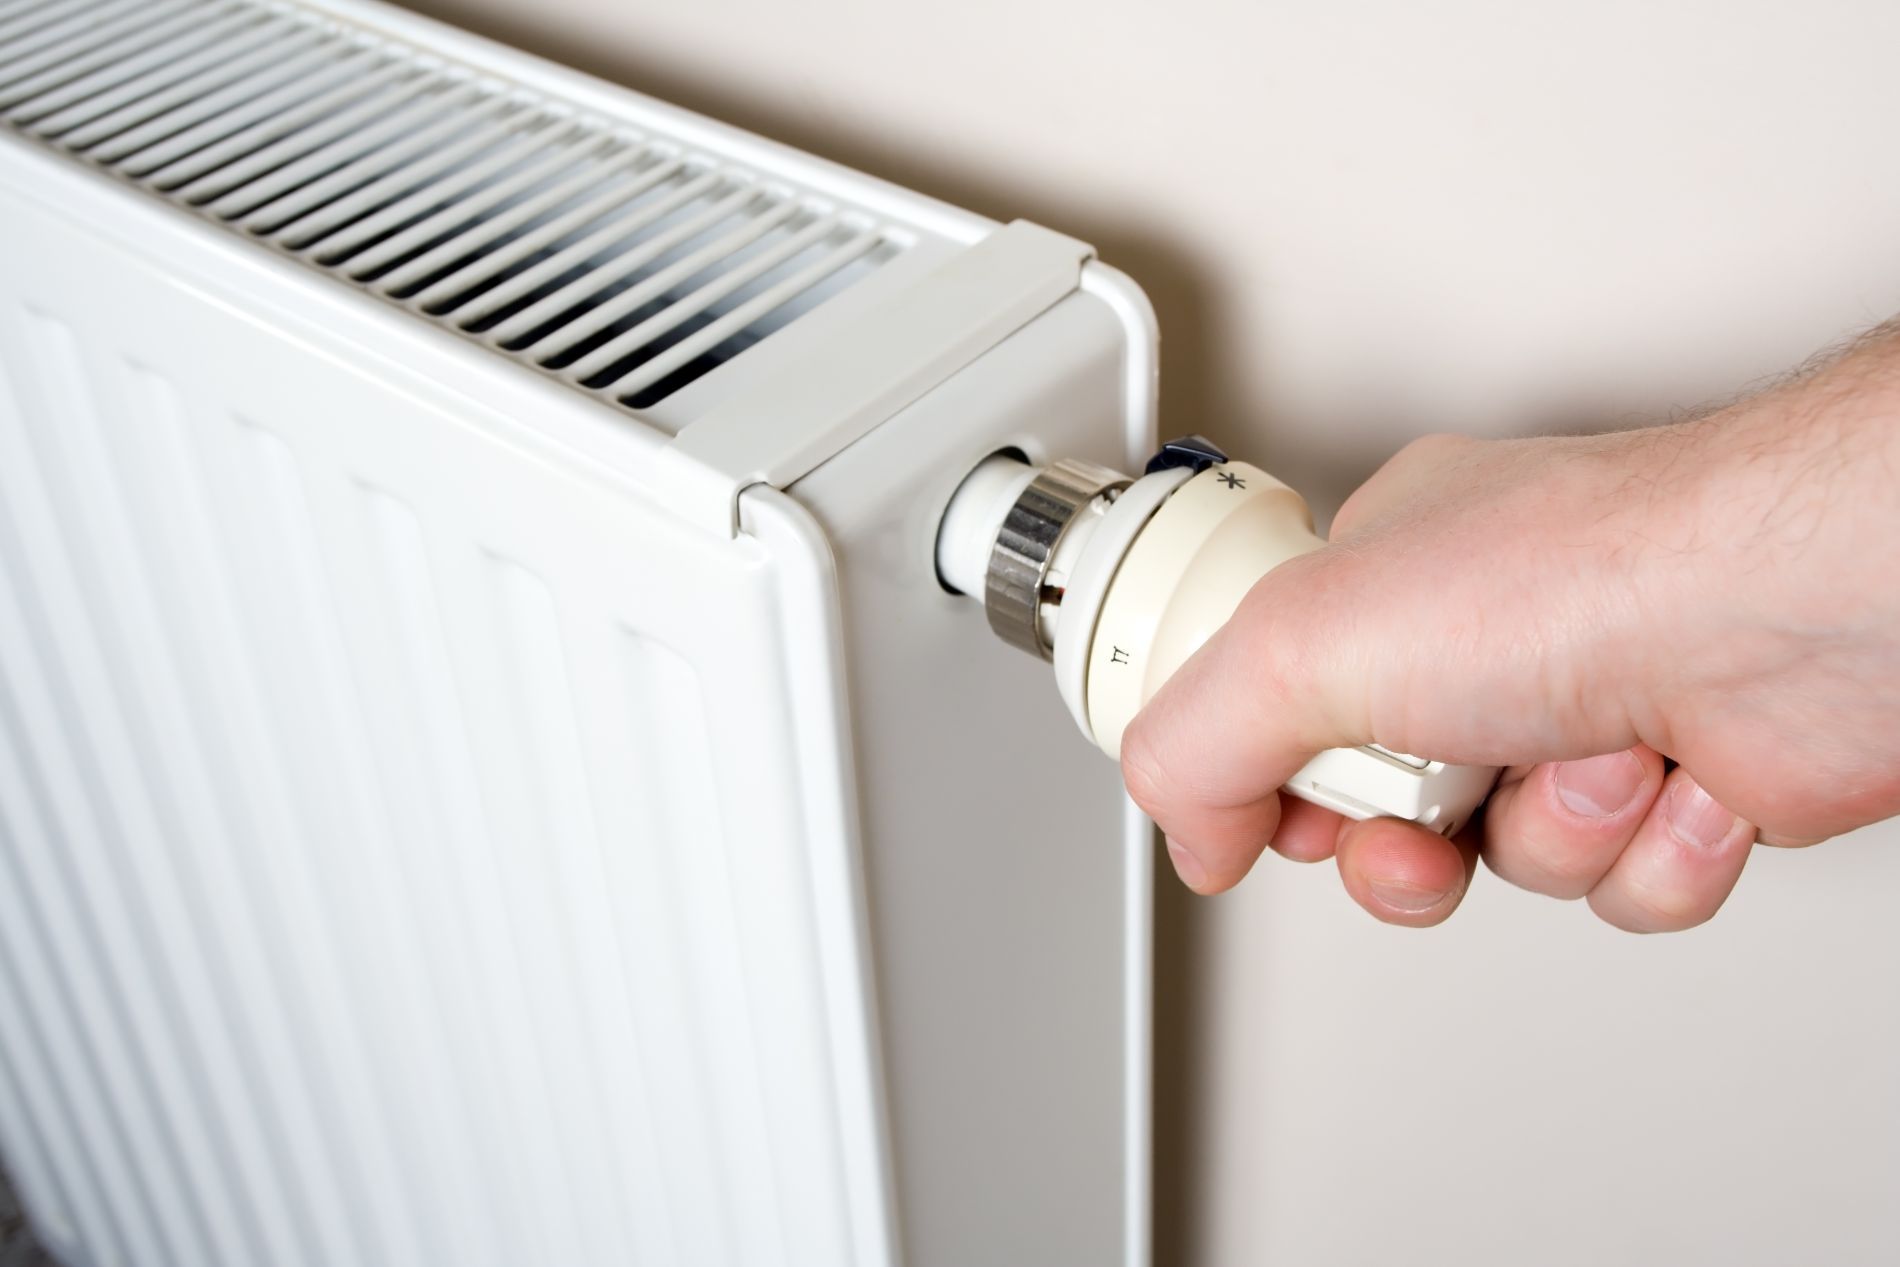 Регулировка температуры радиаторов отопления: вентили или термостаты